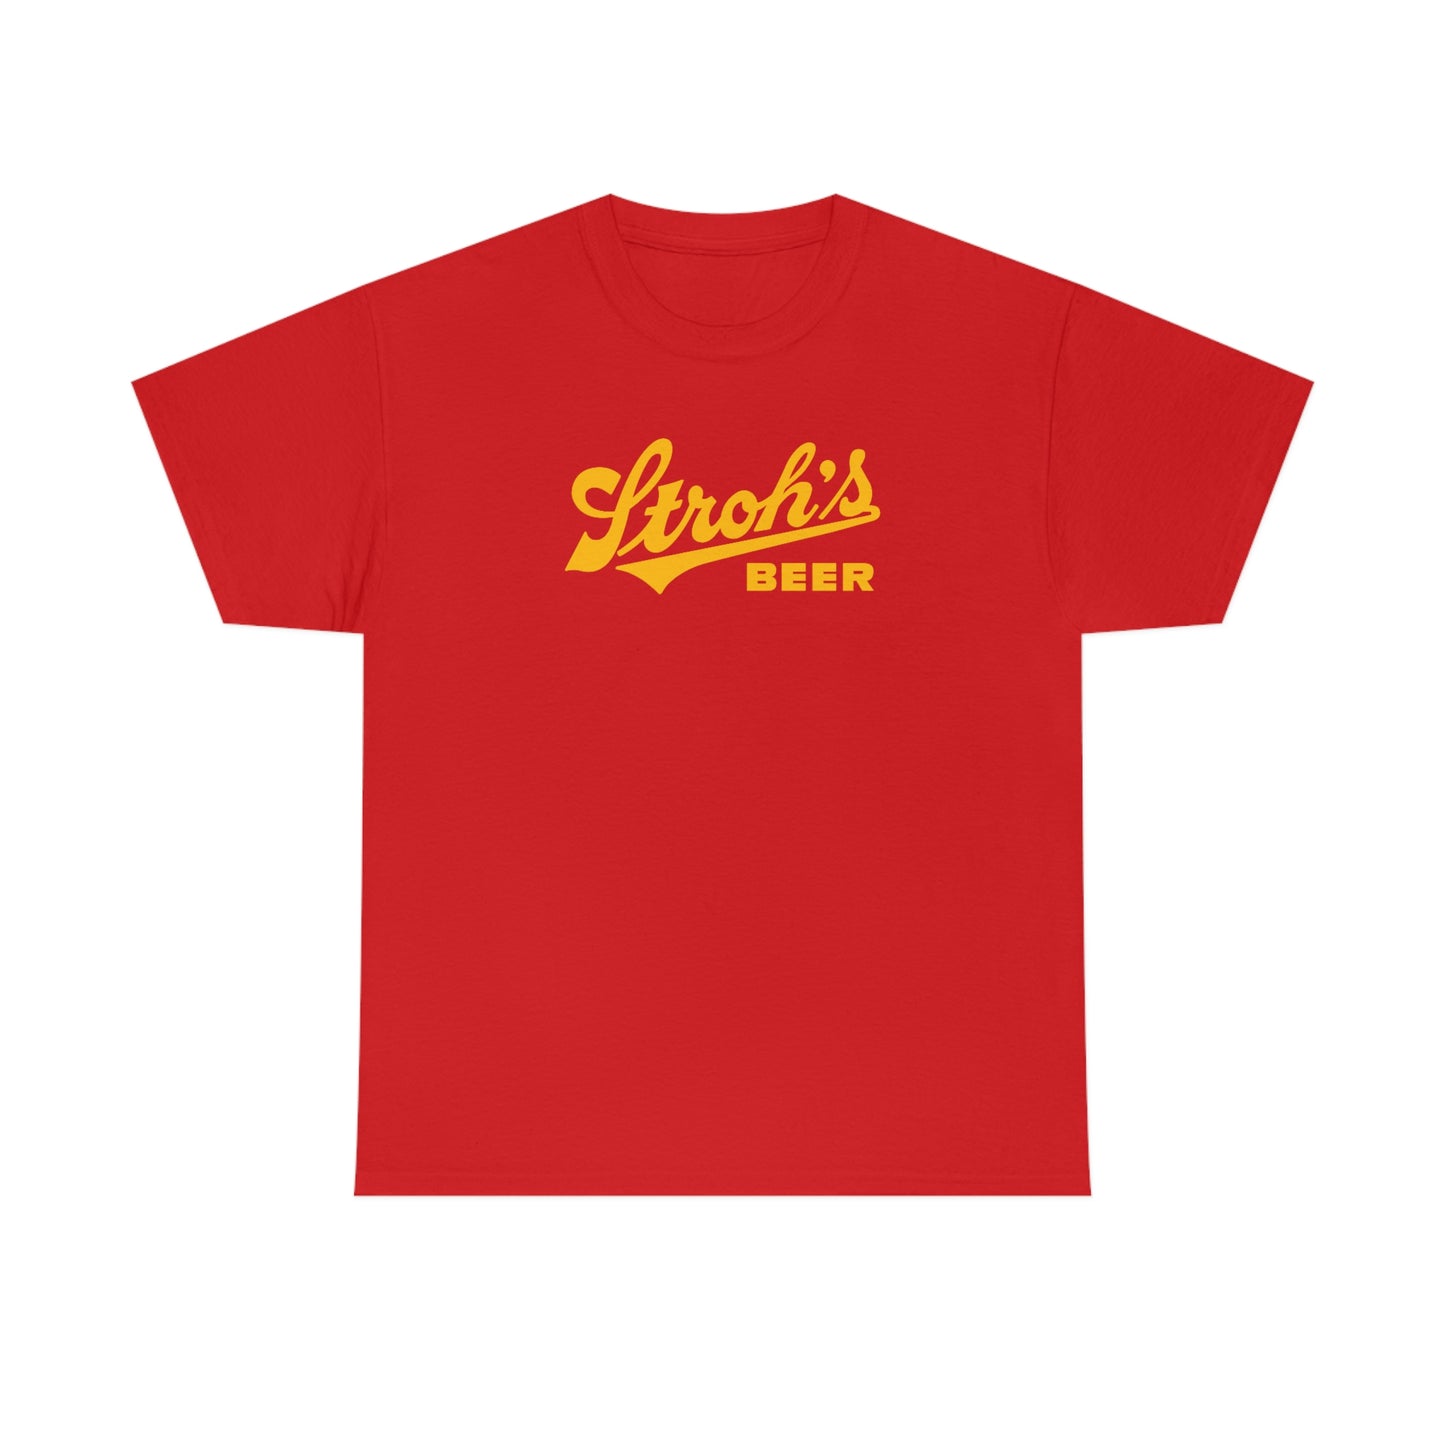 Stroh's Beer T-shirt